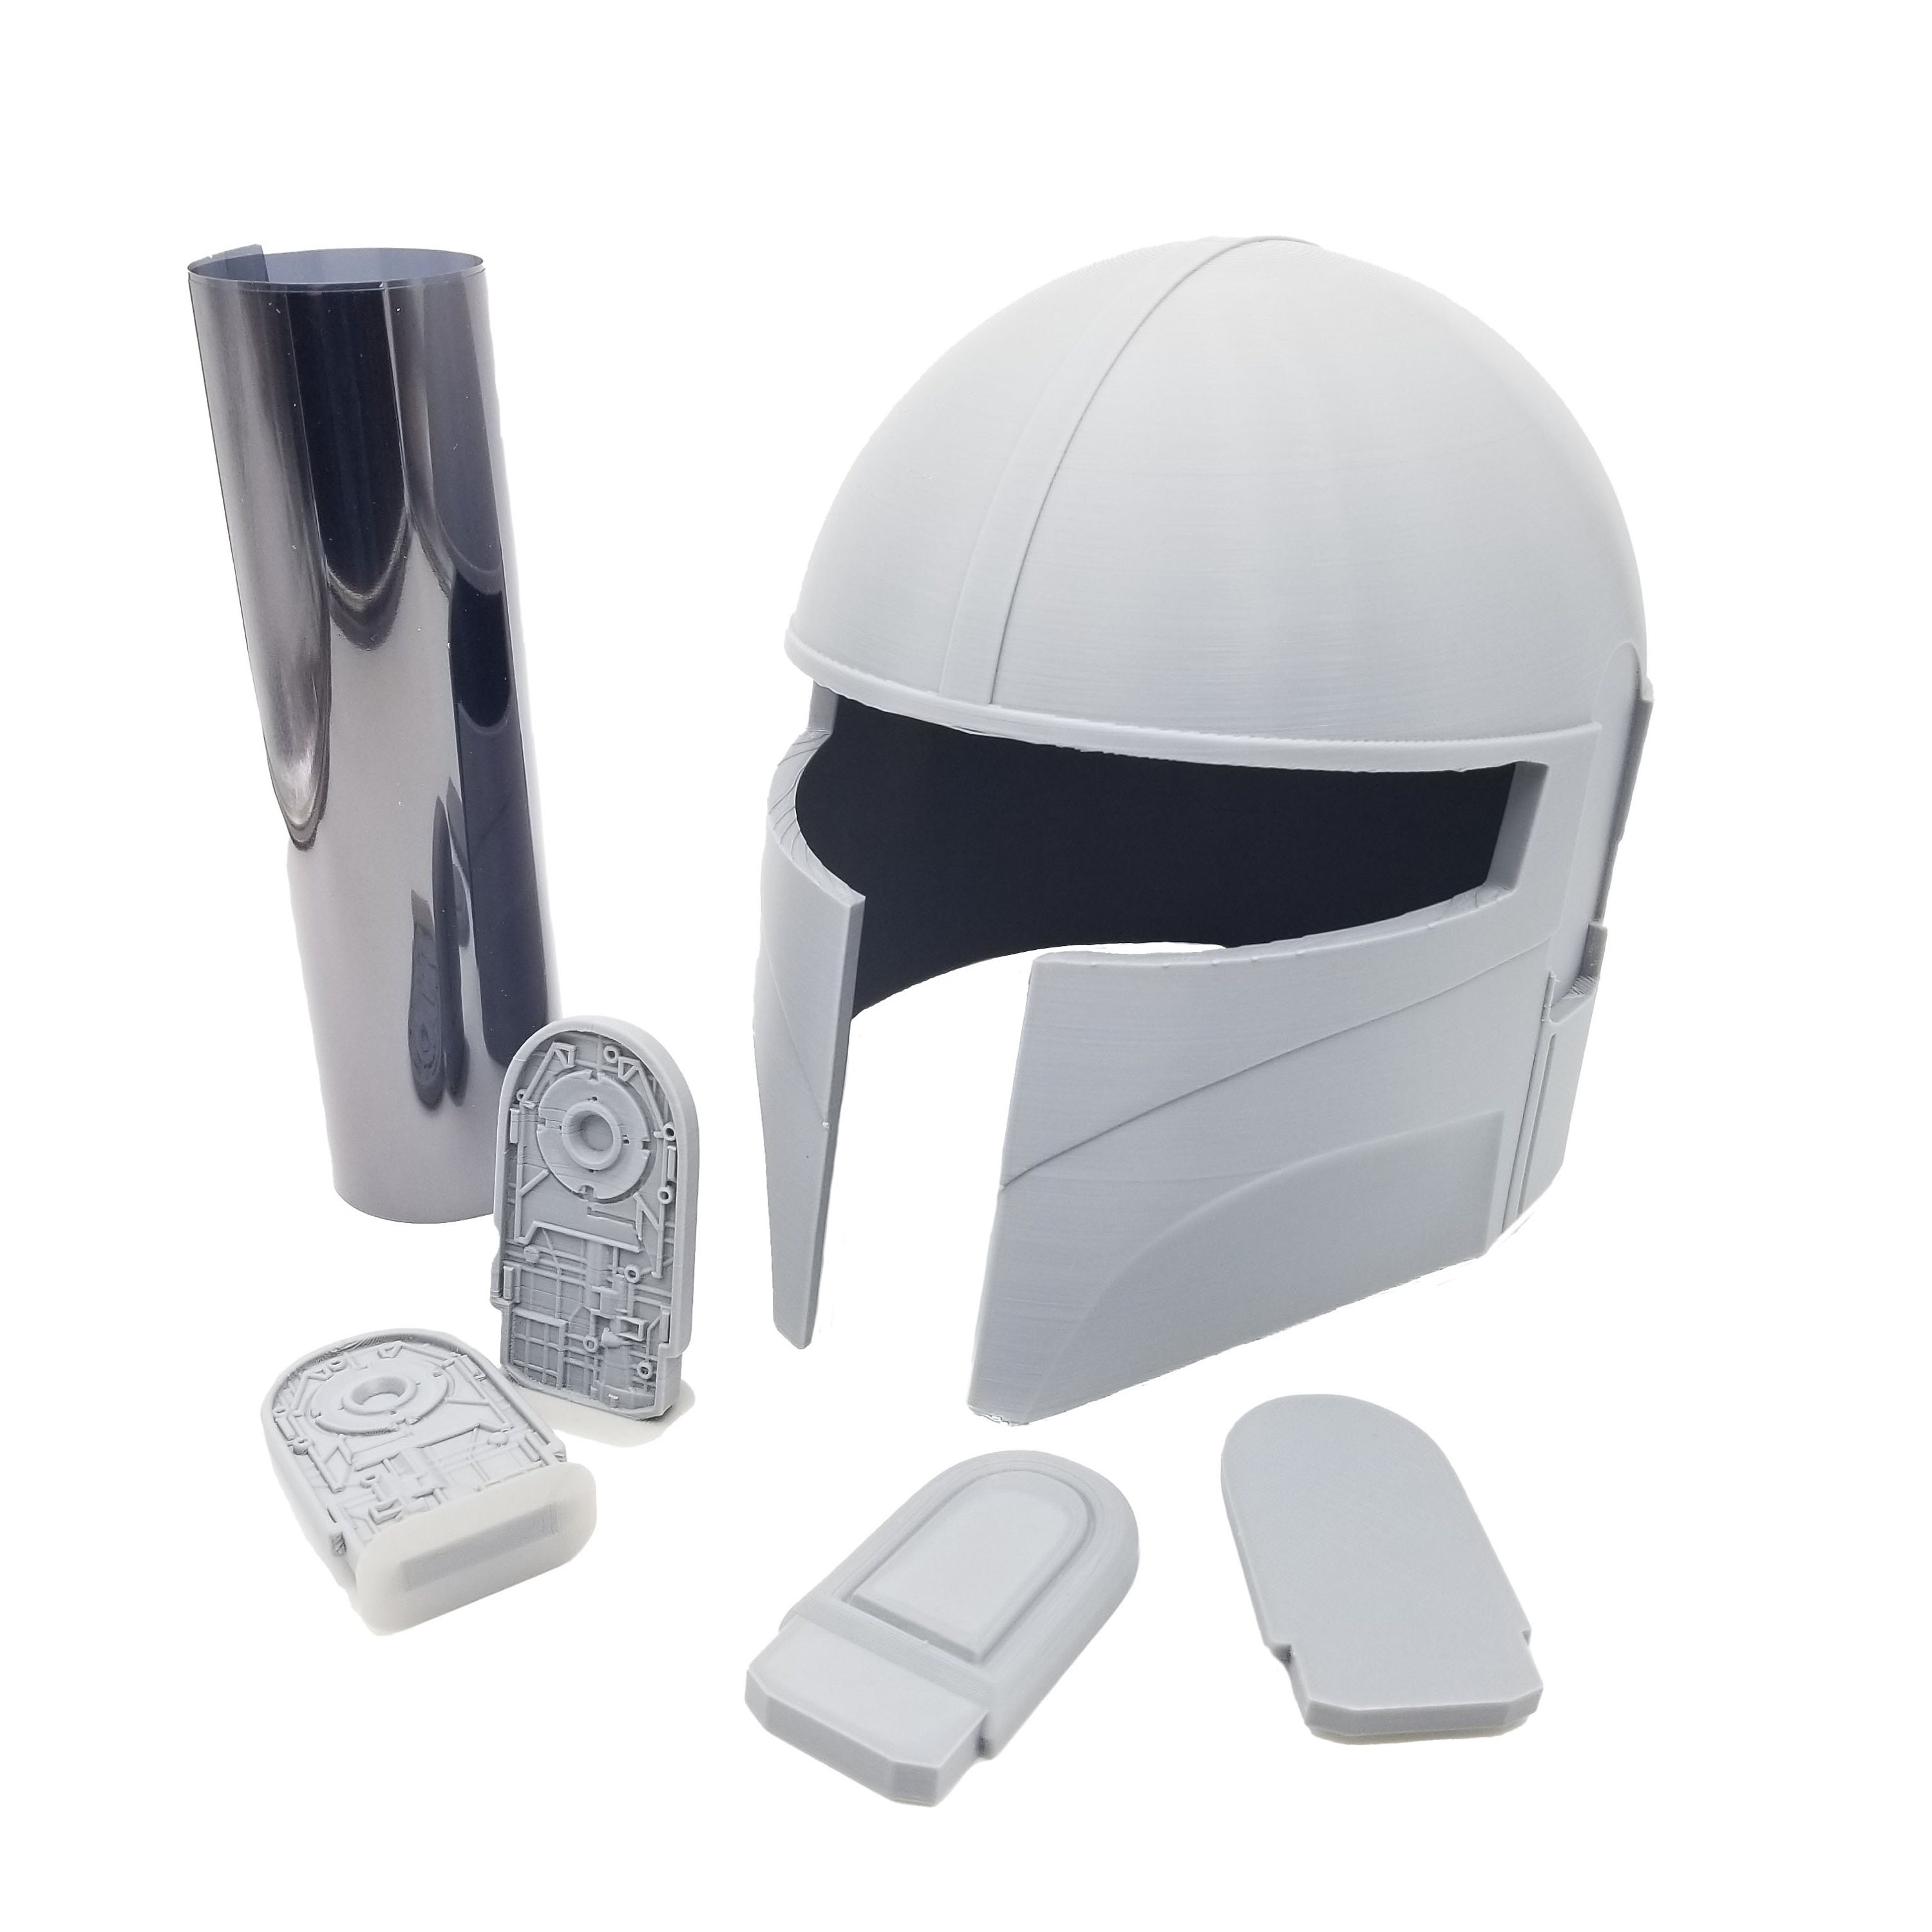 El casco mandaloriano de Boba Fett es lo mejor que puede comprar un fan de  Star Wars: es electrónico y está en oferta por 110€